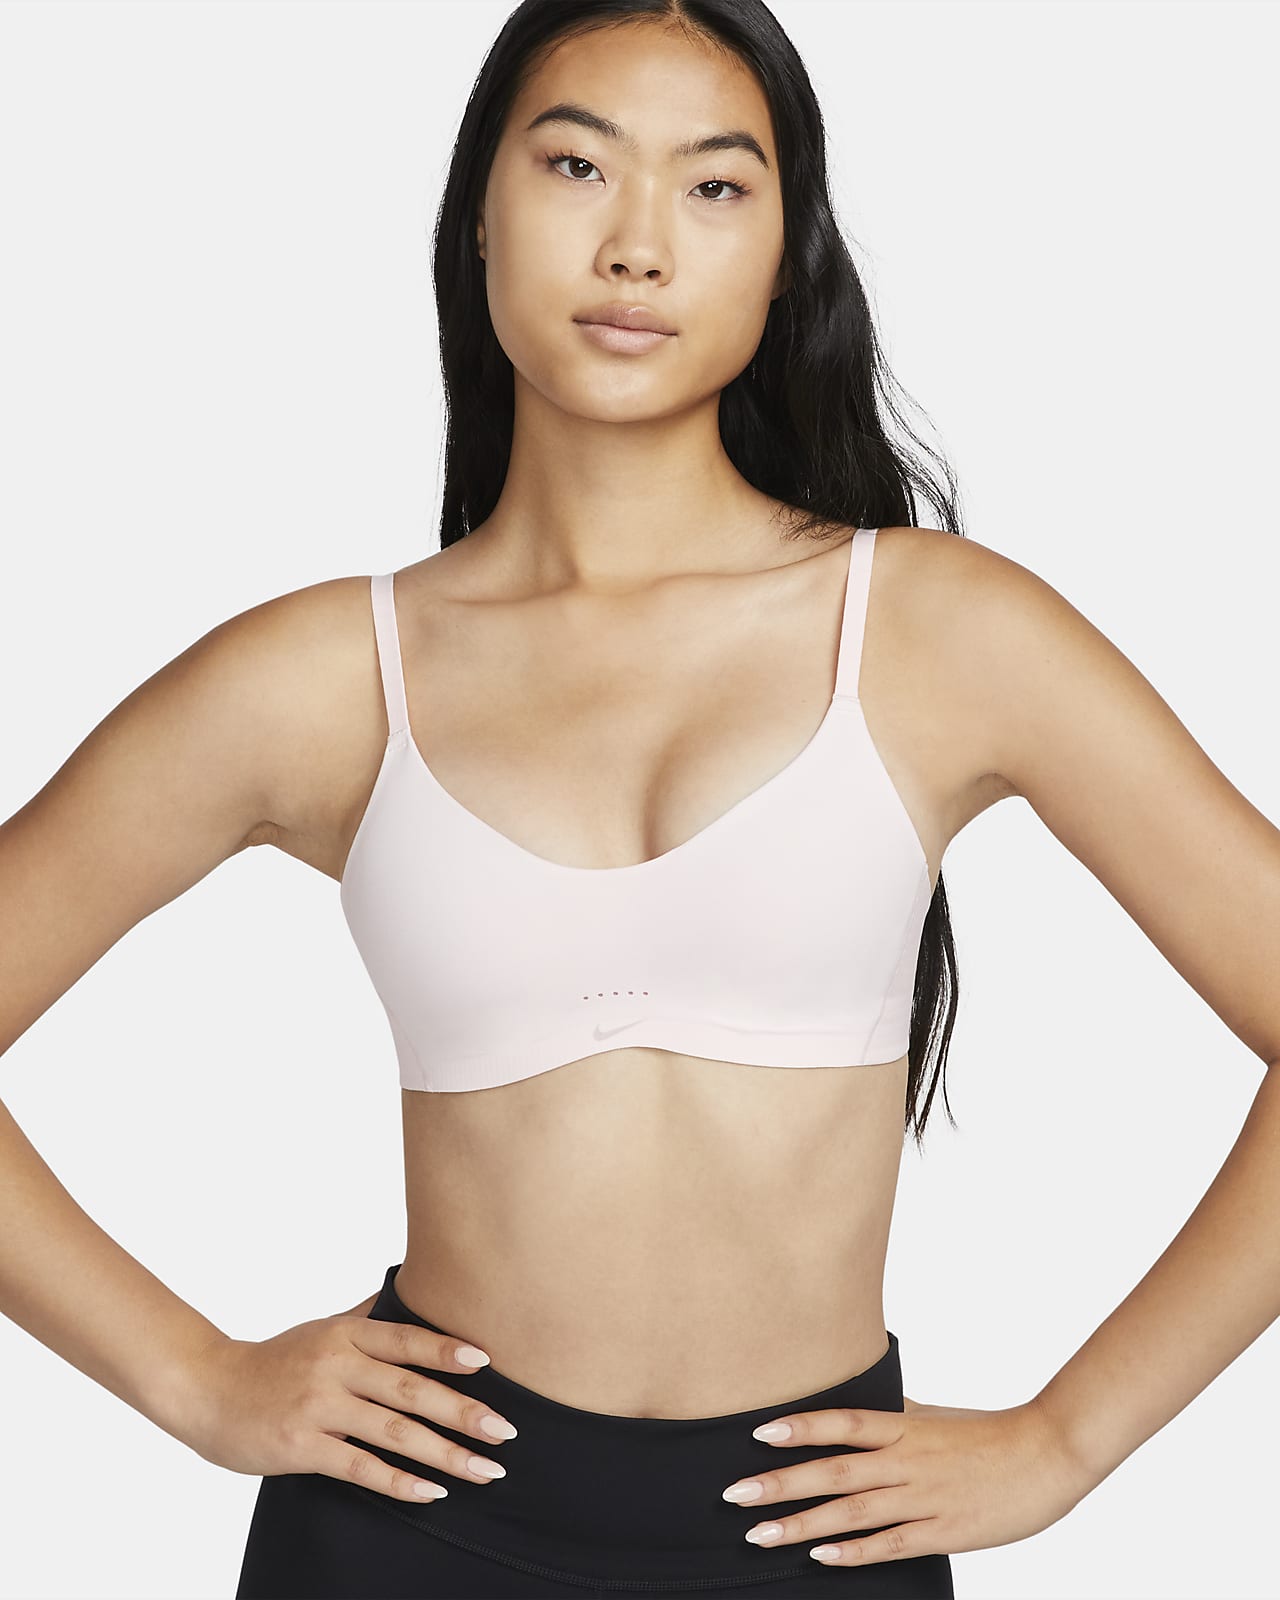 Nike Dri-FIT Alate 女款 Minimalist 輕度支撐型襯墊運動內衣